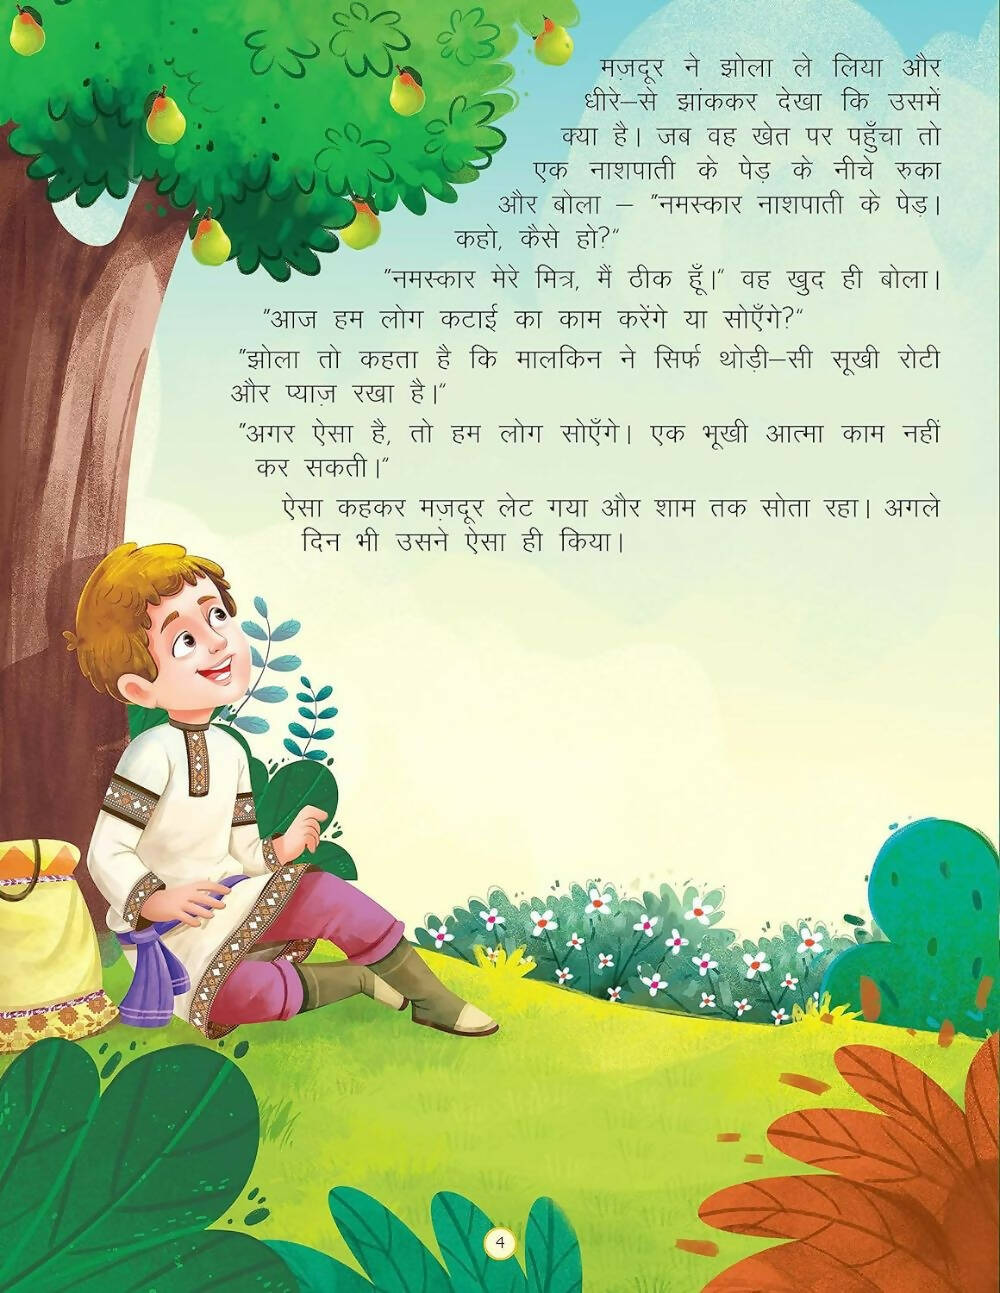 Dreamland Bolne Wala Thaila - Duniya Ki Sair Kahaniya Hindi Story Book for Kids Age 4 - 7 Years - Distacart